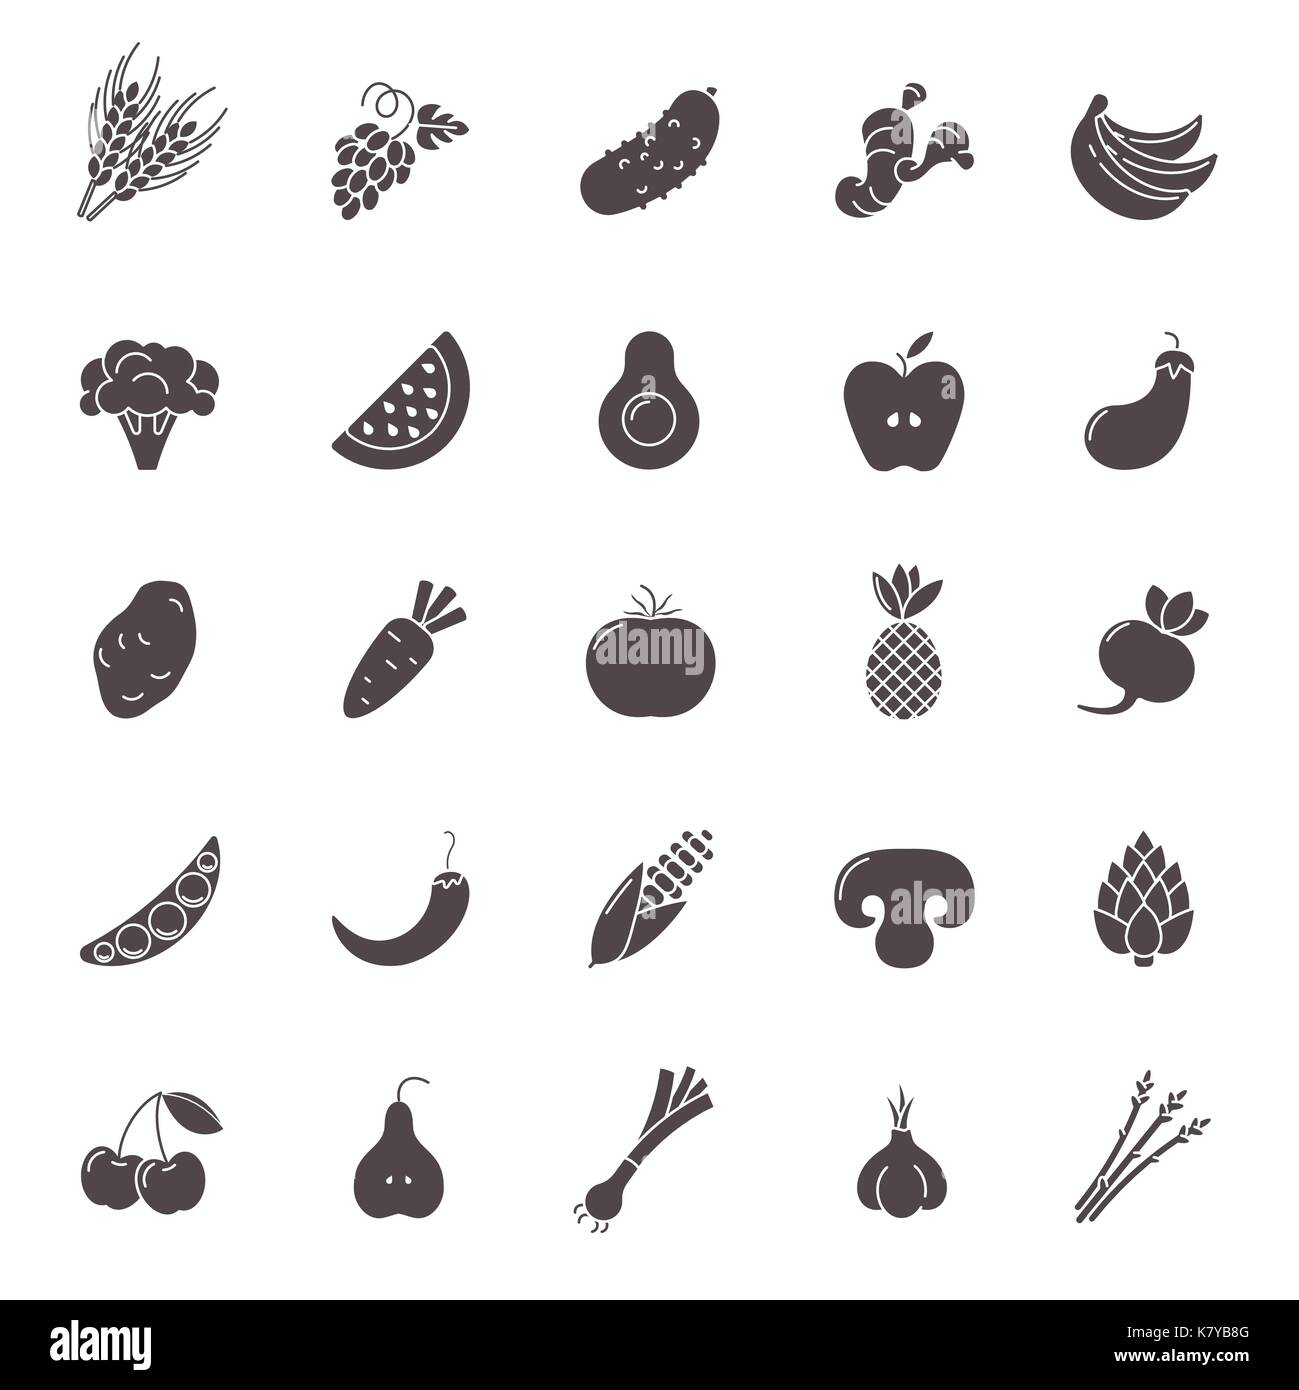 Obst und Gemüse Icon Set. Vegan natürliche bio Piktogramme. Artischocken, Spargel, Weizen, Bananen, Trauben, Lauch, Knoblauch, Ingwer und andere organische Nahrung Zeichen. Stock Vektor